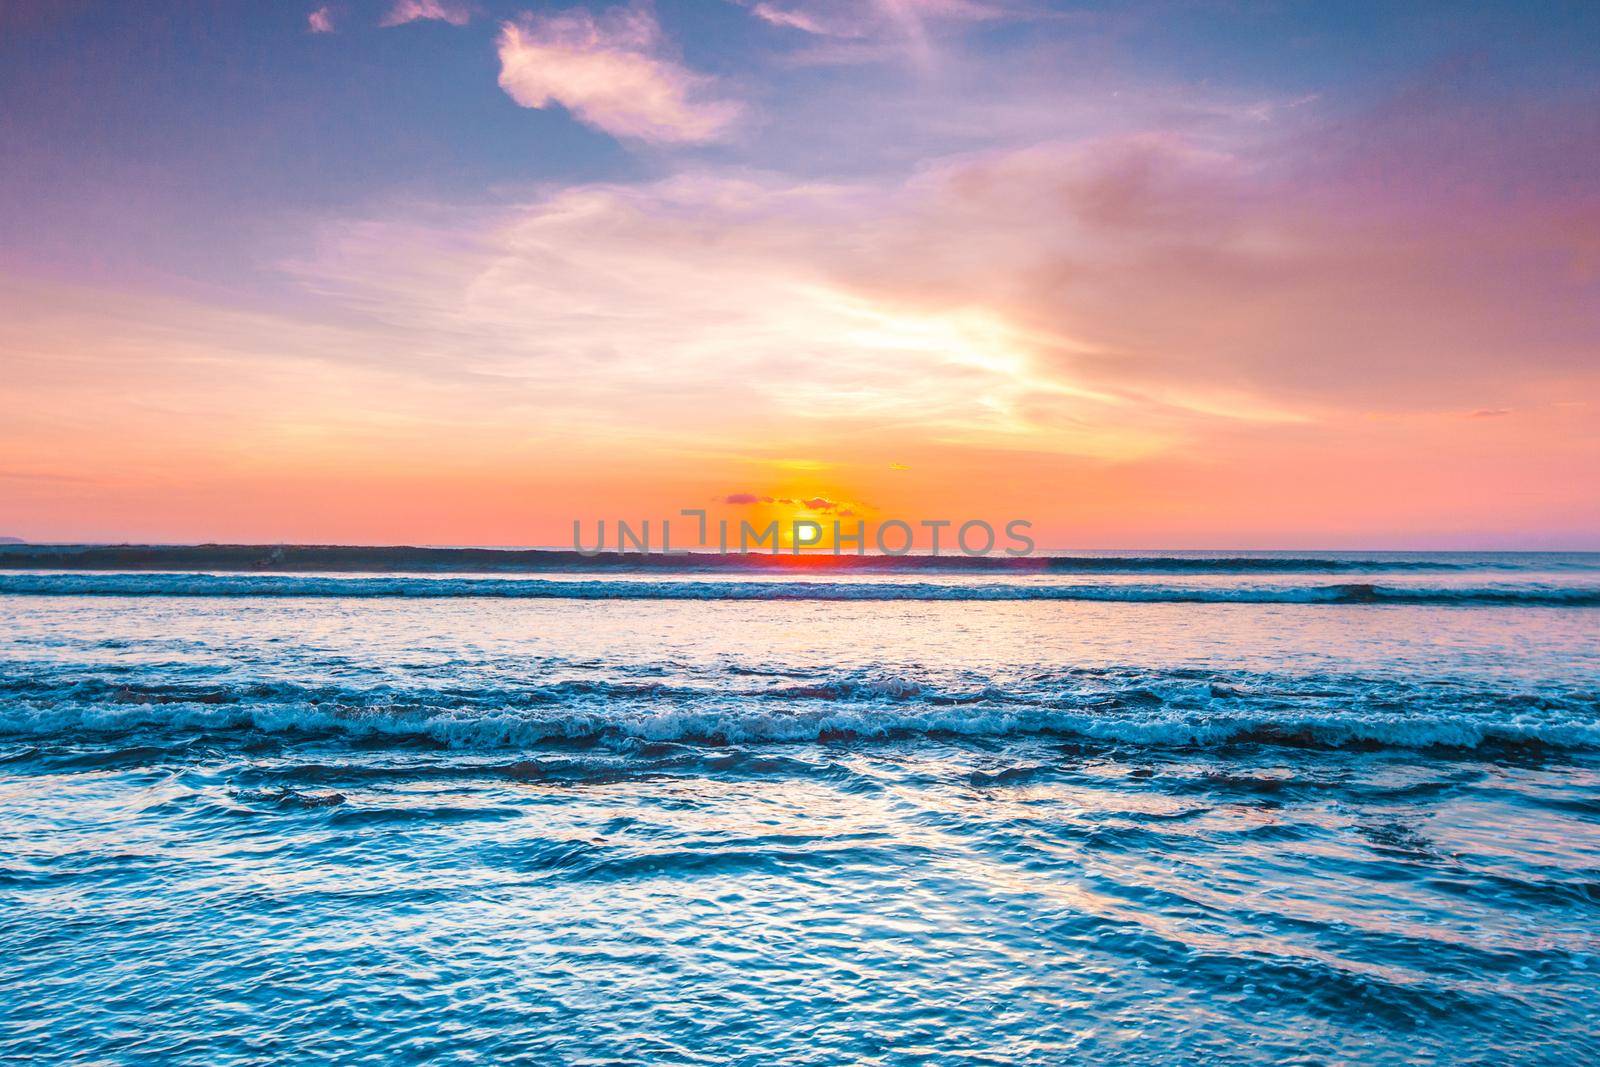 Amazing sunset from Bali beach by Yellowj